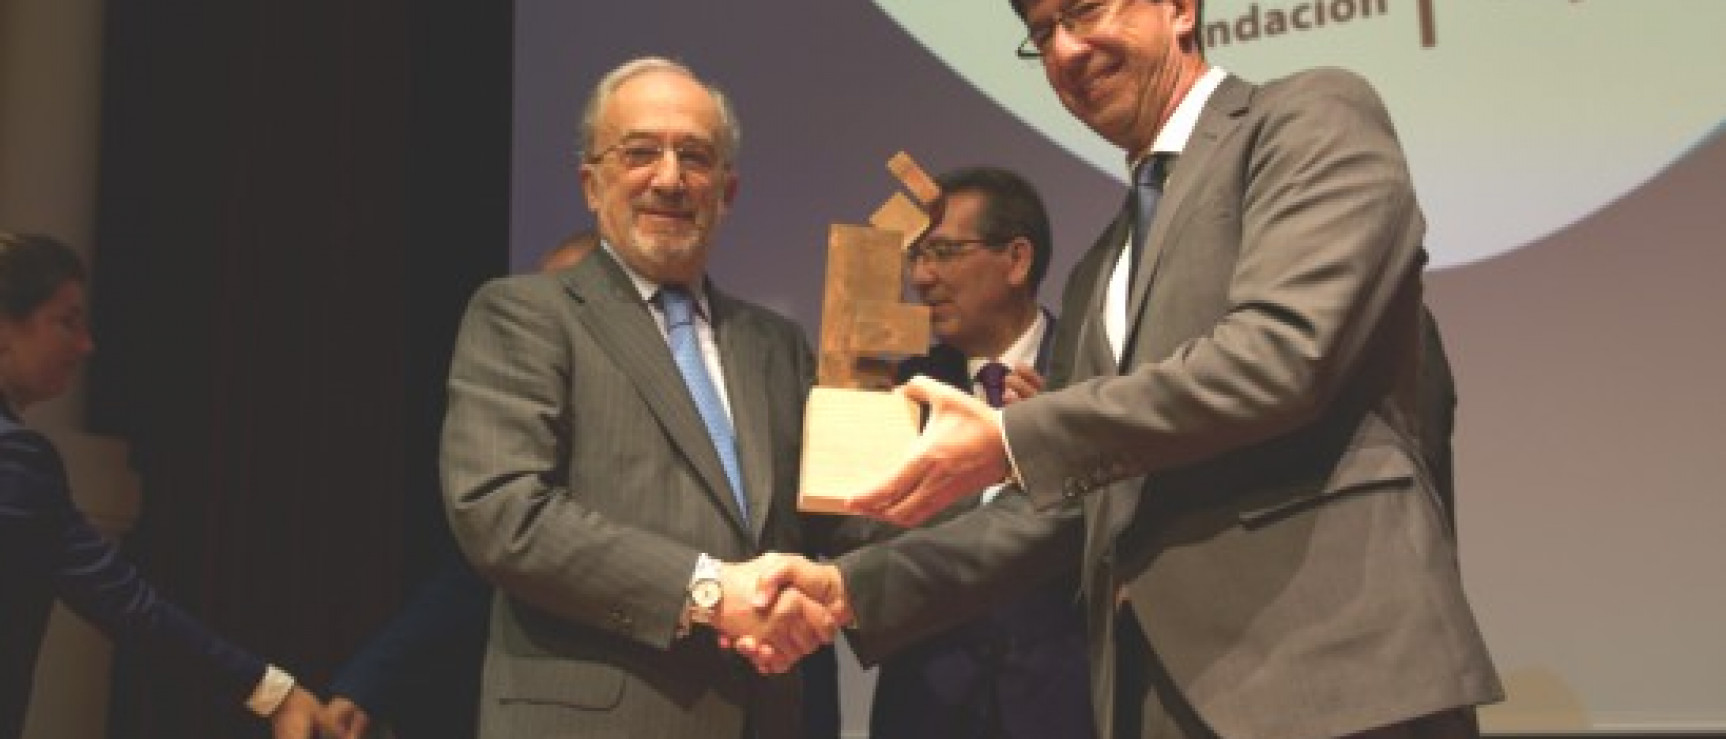 Santiago Muñoz Machado recibe el Premio Jurídico ABC Cajasol (foto: RAE)